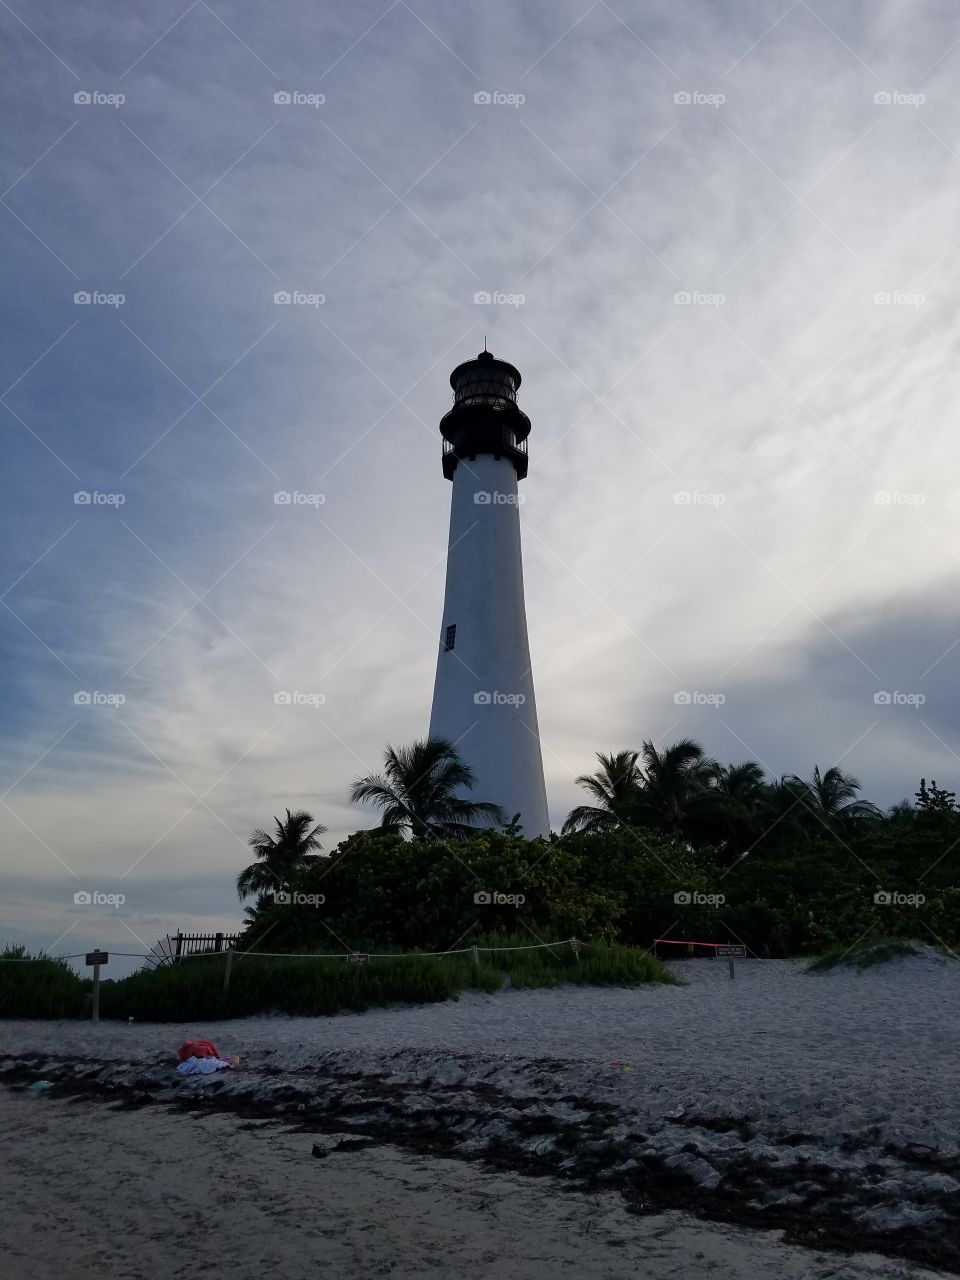 lighthouse on a tropical island paradise